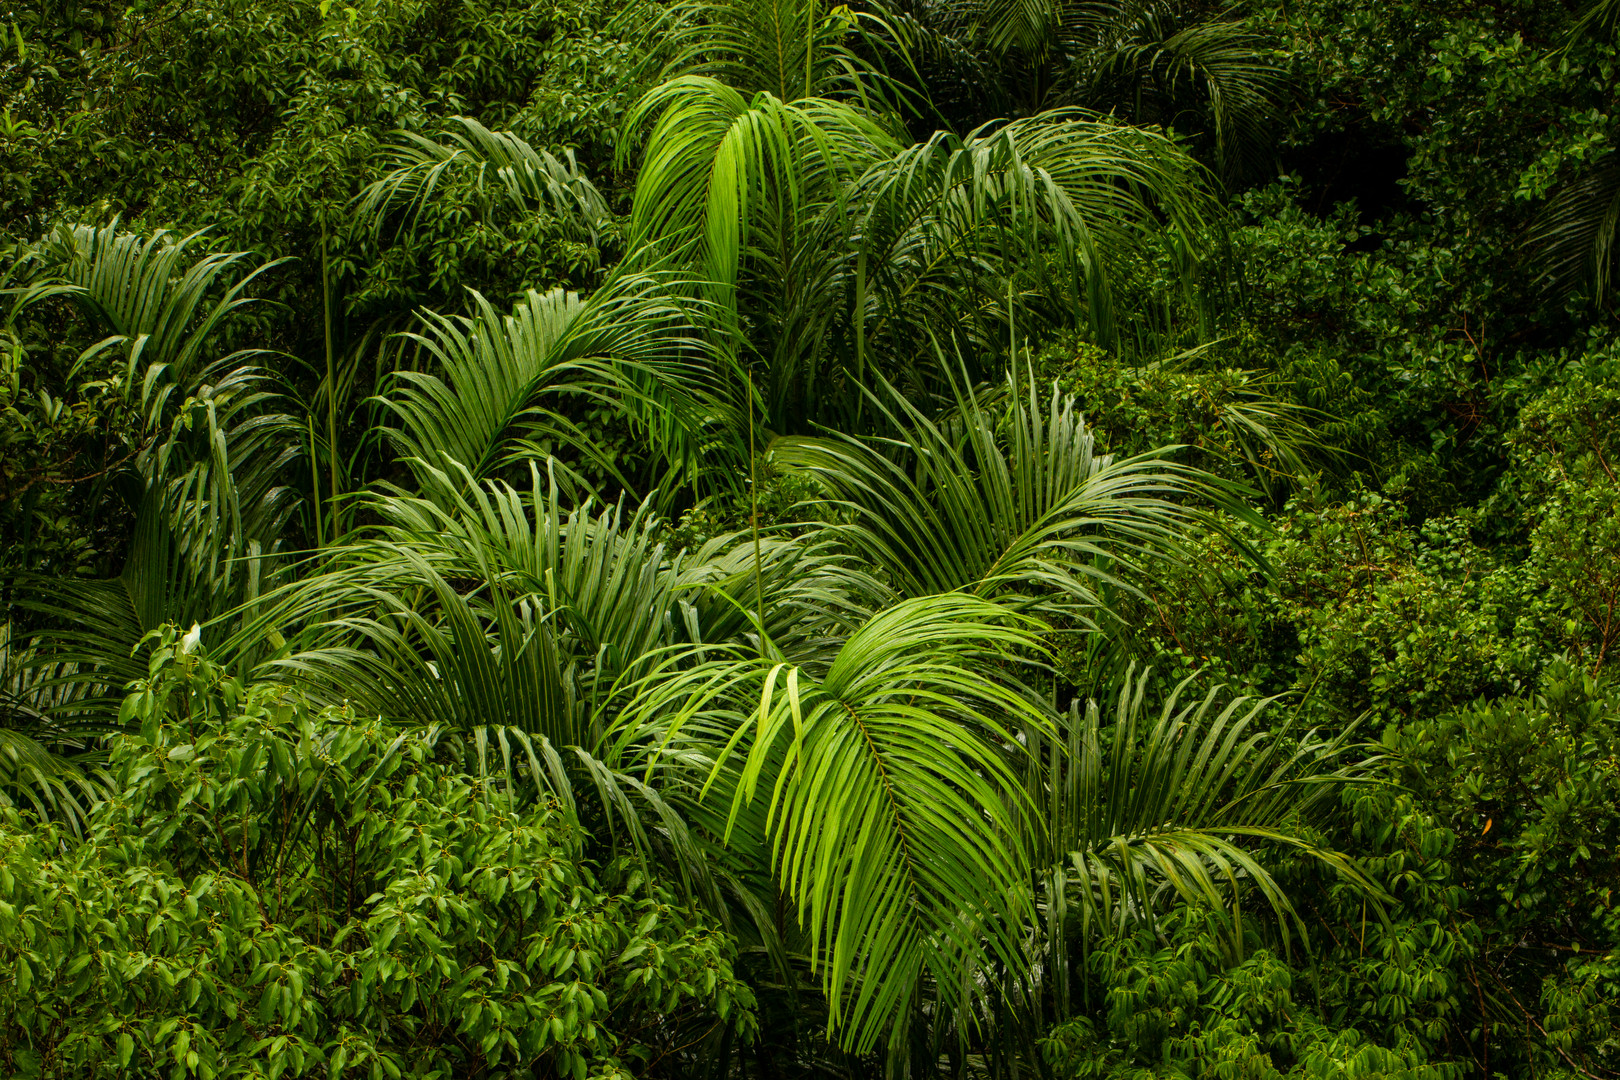 Monsoonforest